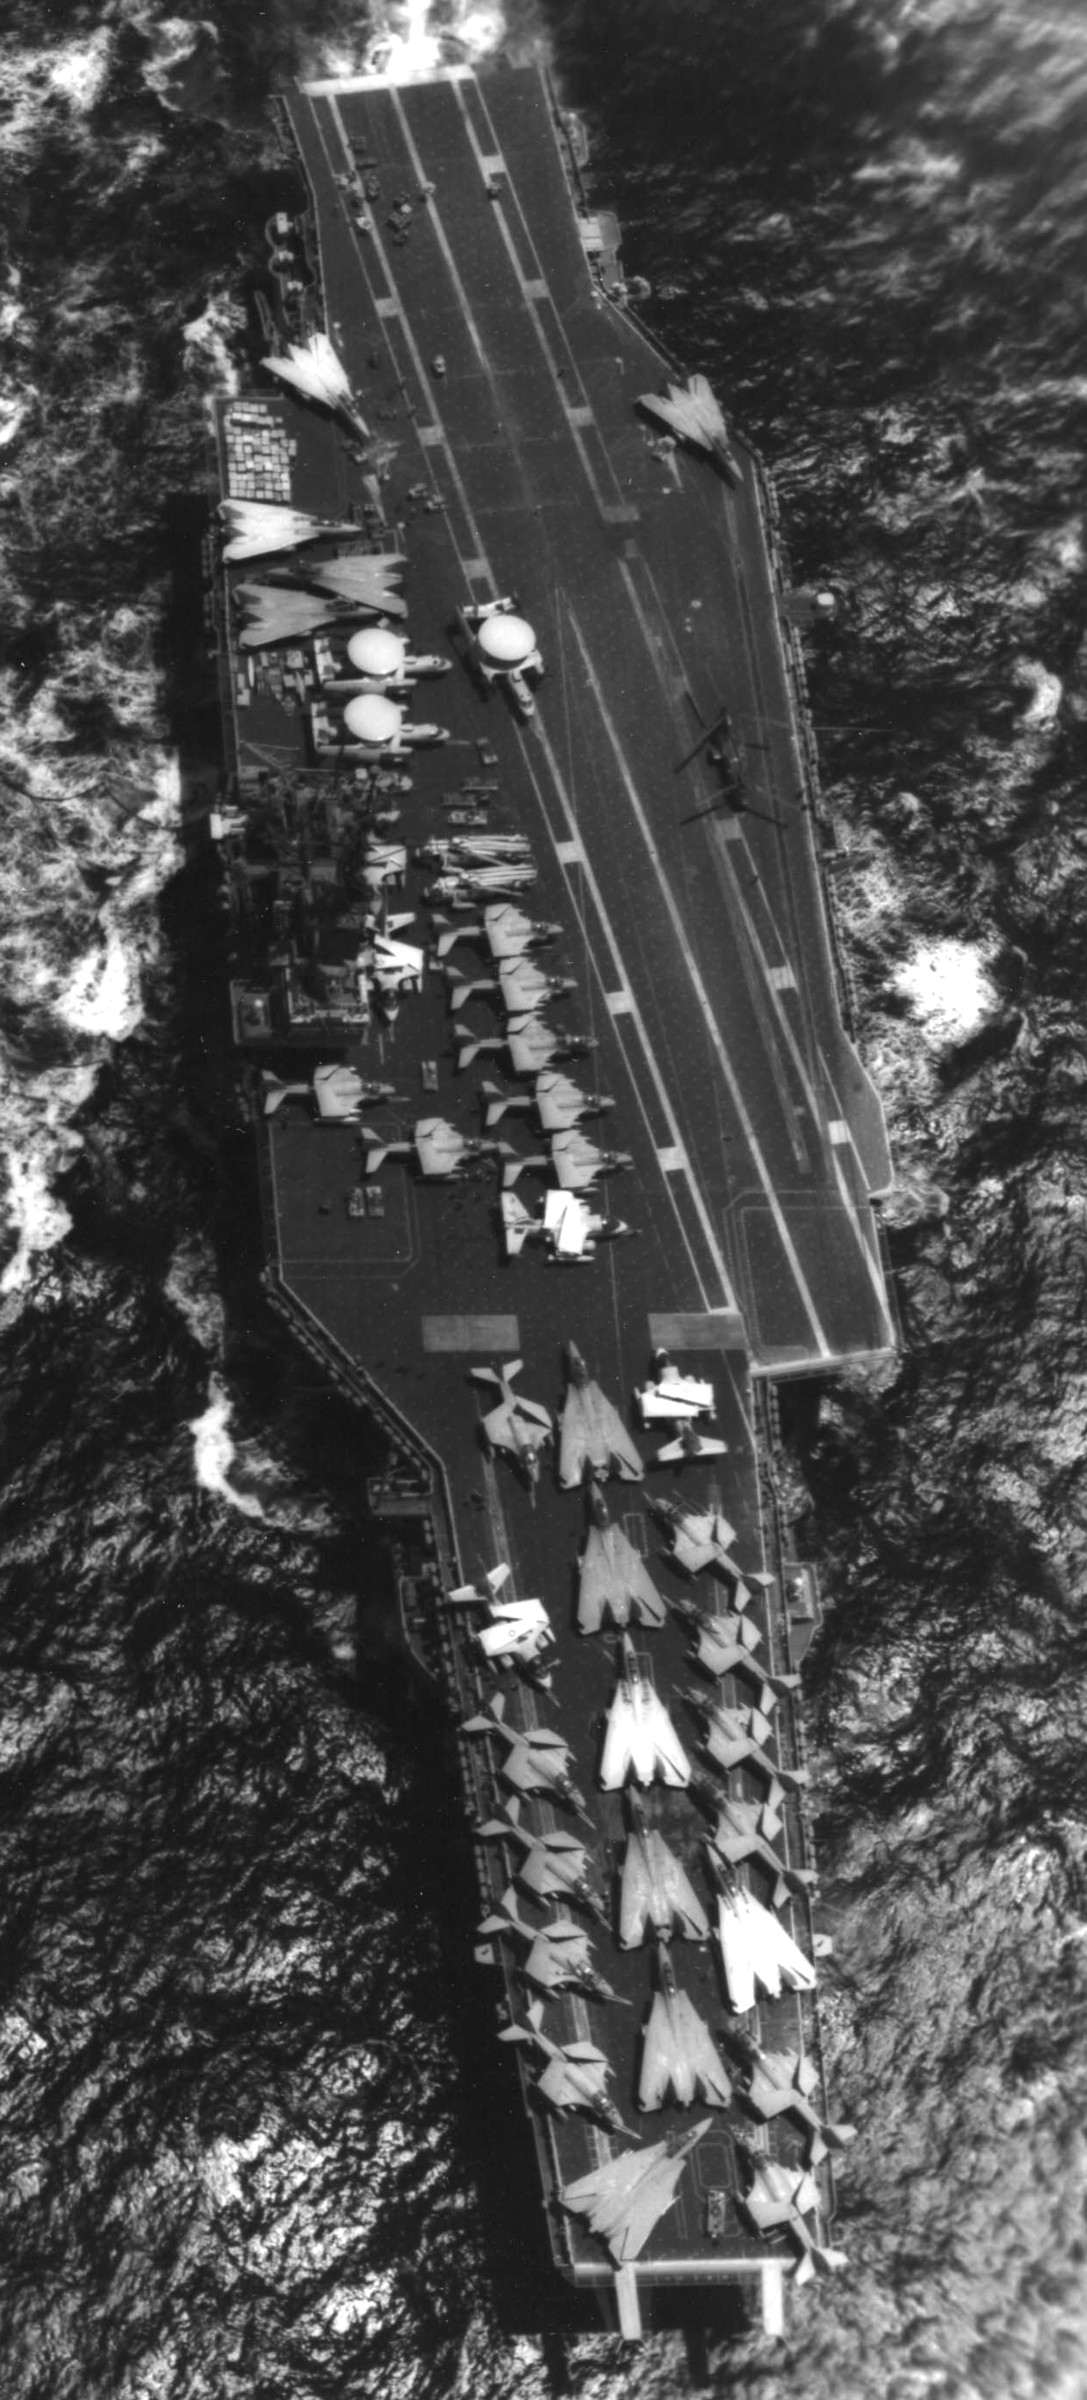 cv-61 uss ranger forrestal class aircraft carrier air wing cvw-2 us navy rimpac 1986 55